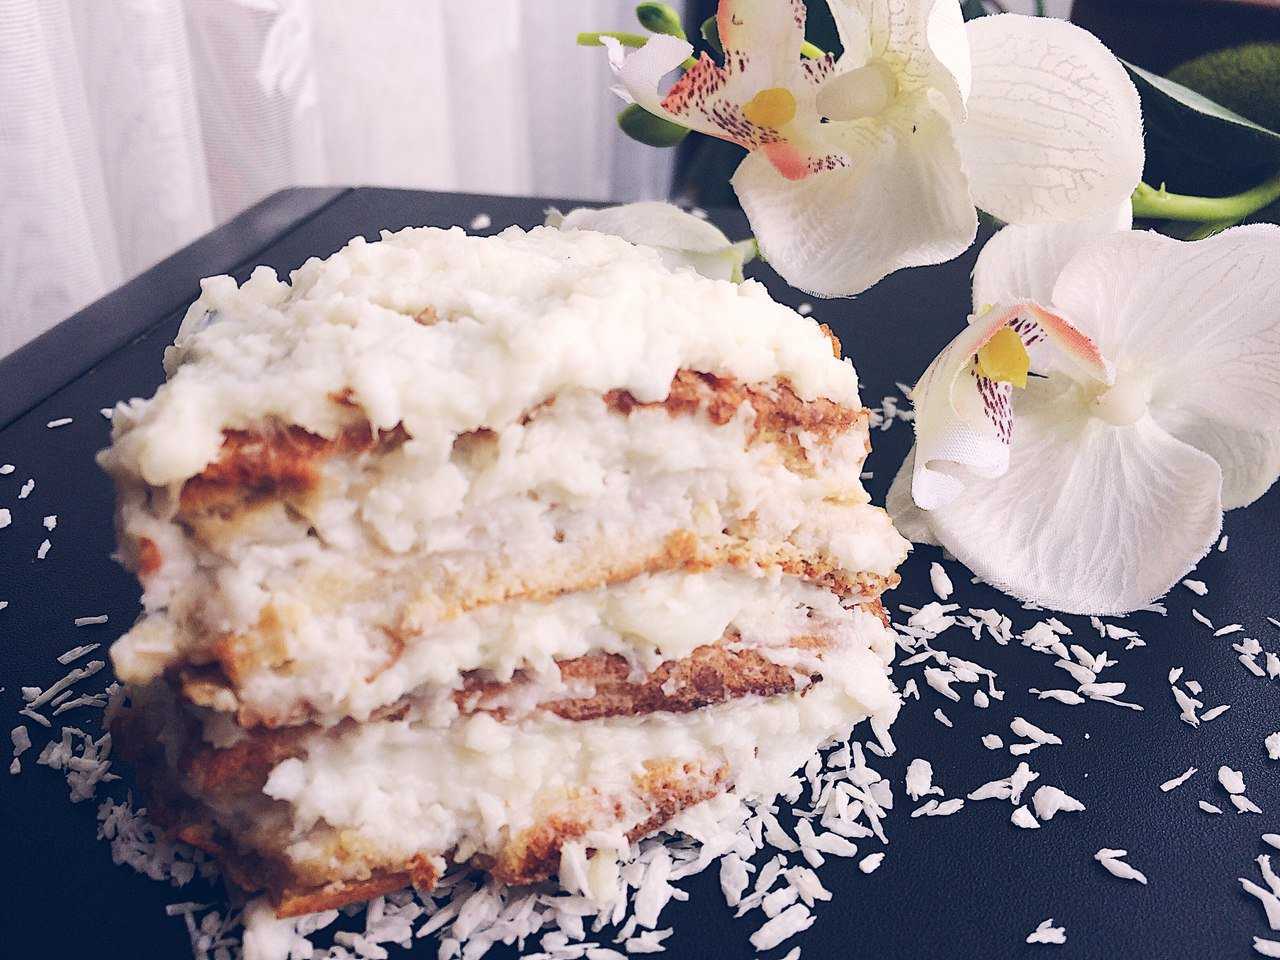 Кокосовый торт – райское наслаждение! разные рецепты известных и новых тортов с кокосовой стружкой для сладкоежек → торты → chef.tm — лучшие рецепты